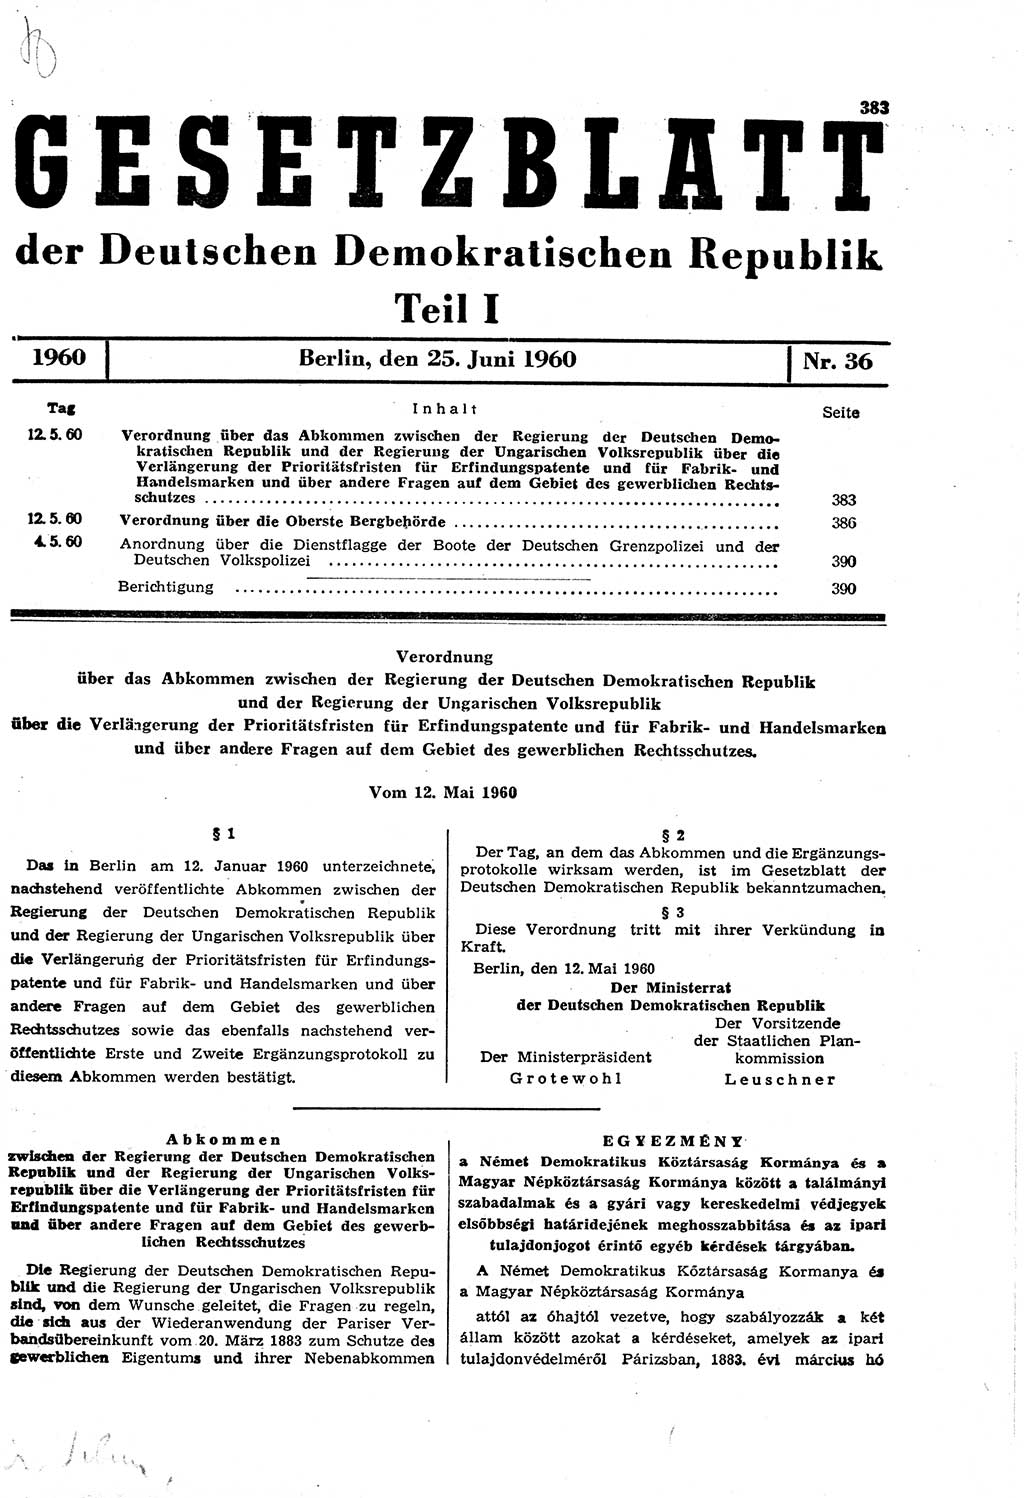 Gesetzblatt (GBl.) der Deutschen Demokratischen Republik (DDR) Teil Ⅰ 1960, Seite 383 (GBl. DDR Ⅰ 1960, S. 383)